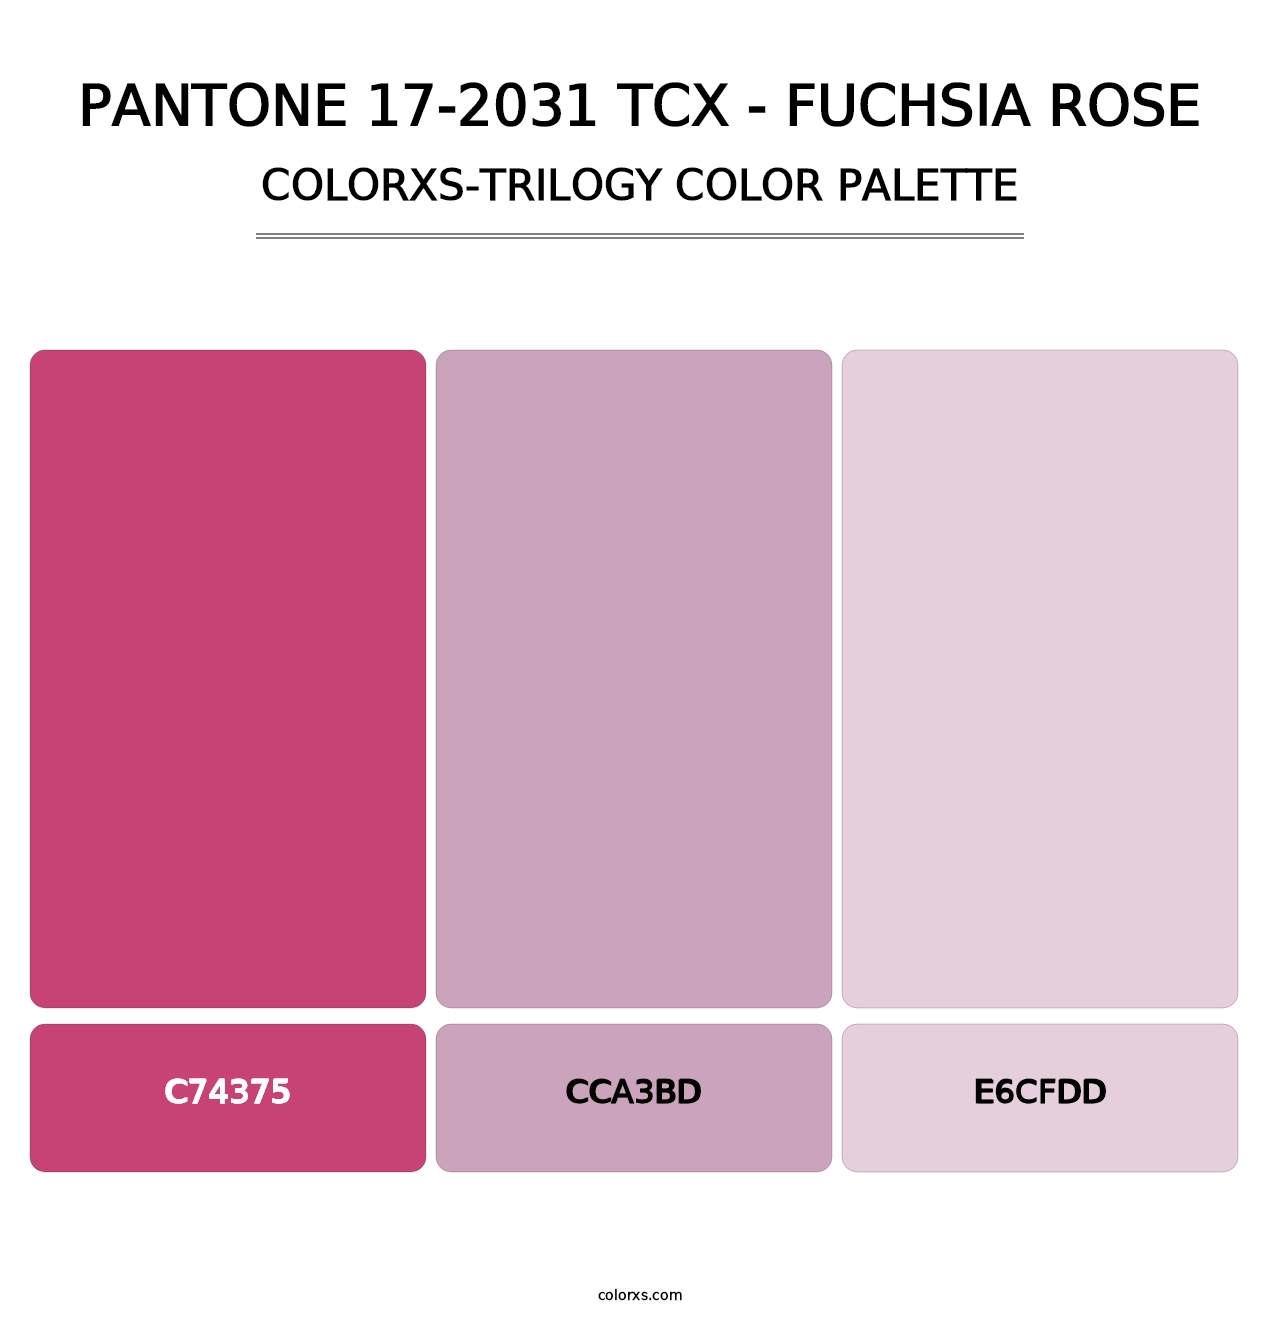 PANTONE 17-2031 TCX - Fuchsia Rose - Colorxs Trilogy Palette